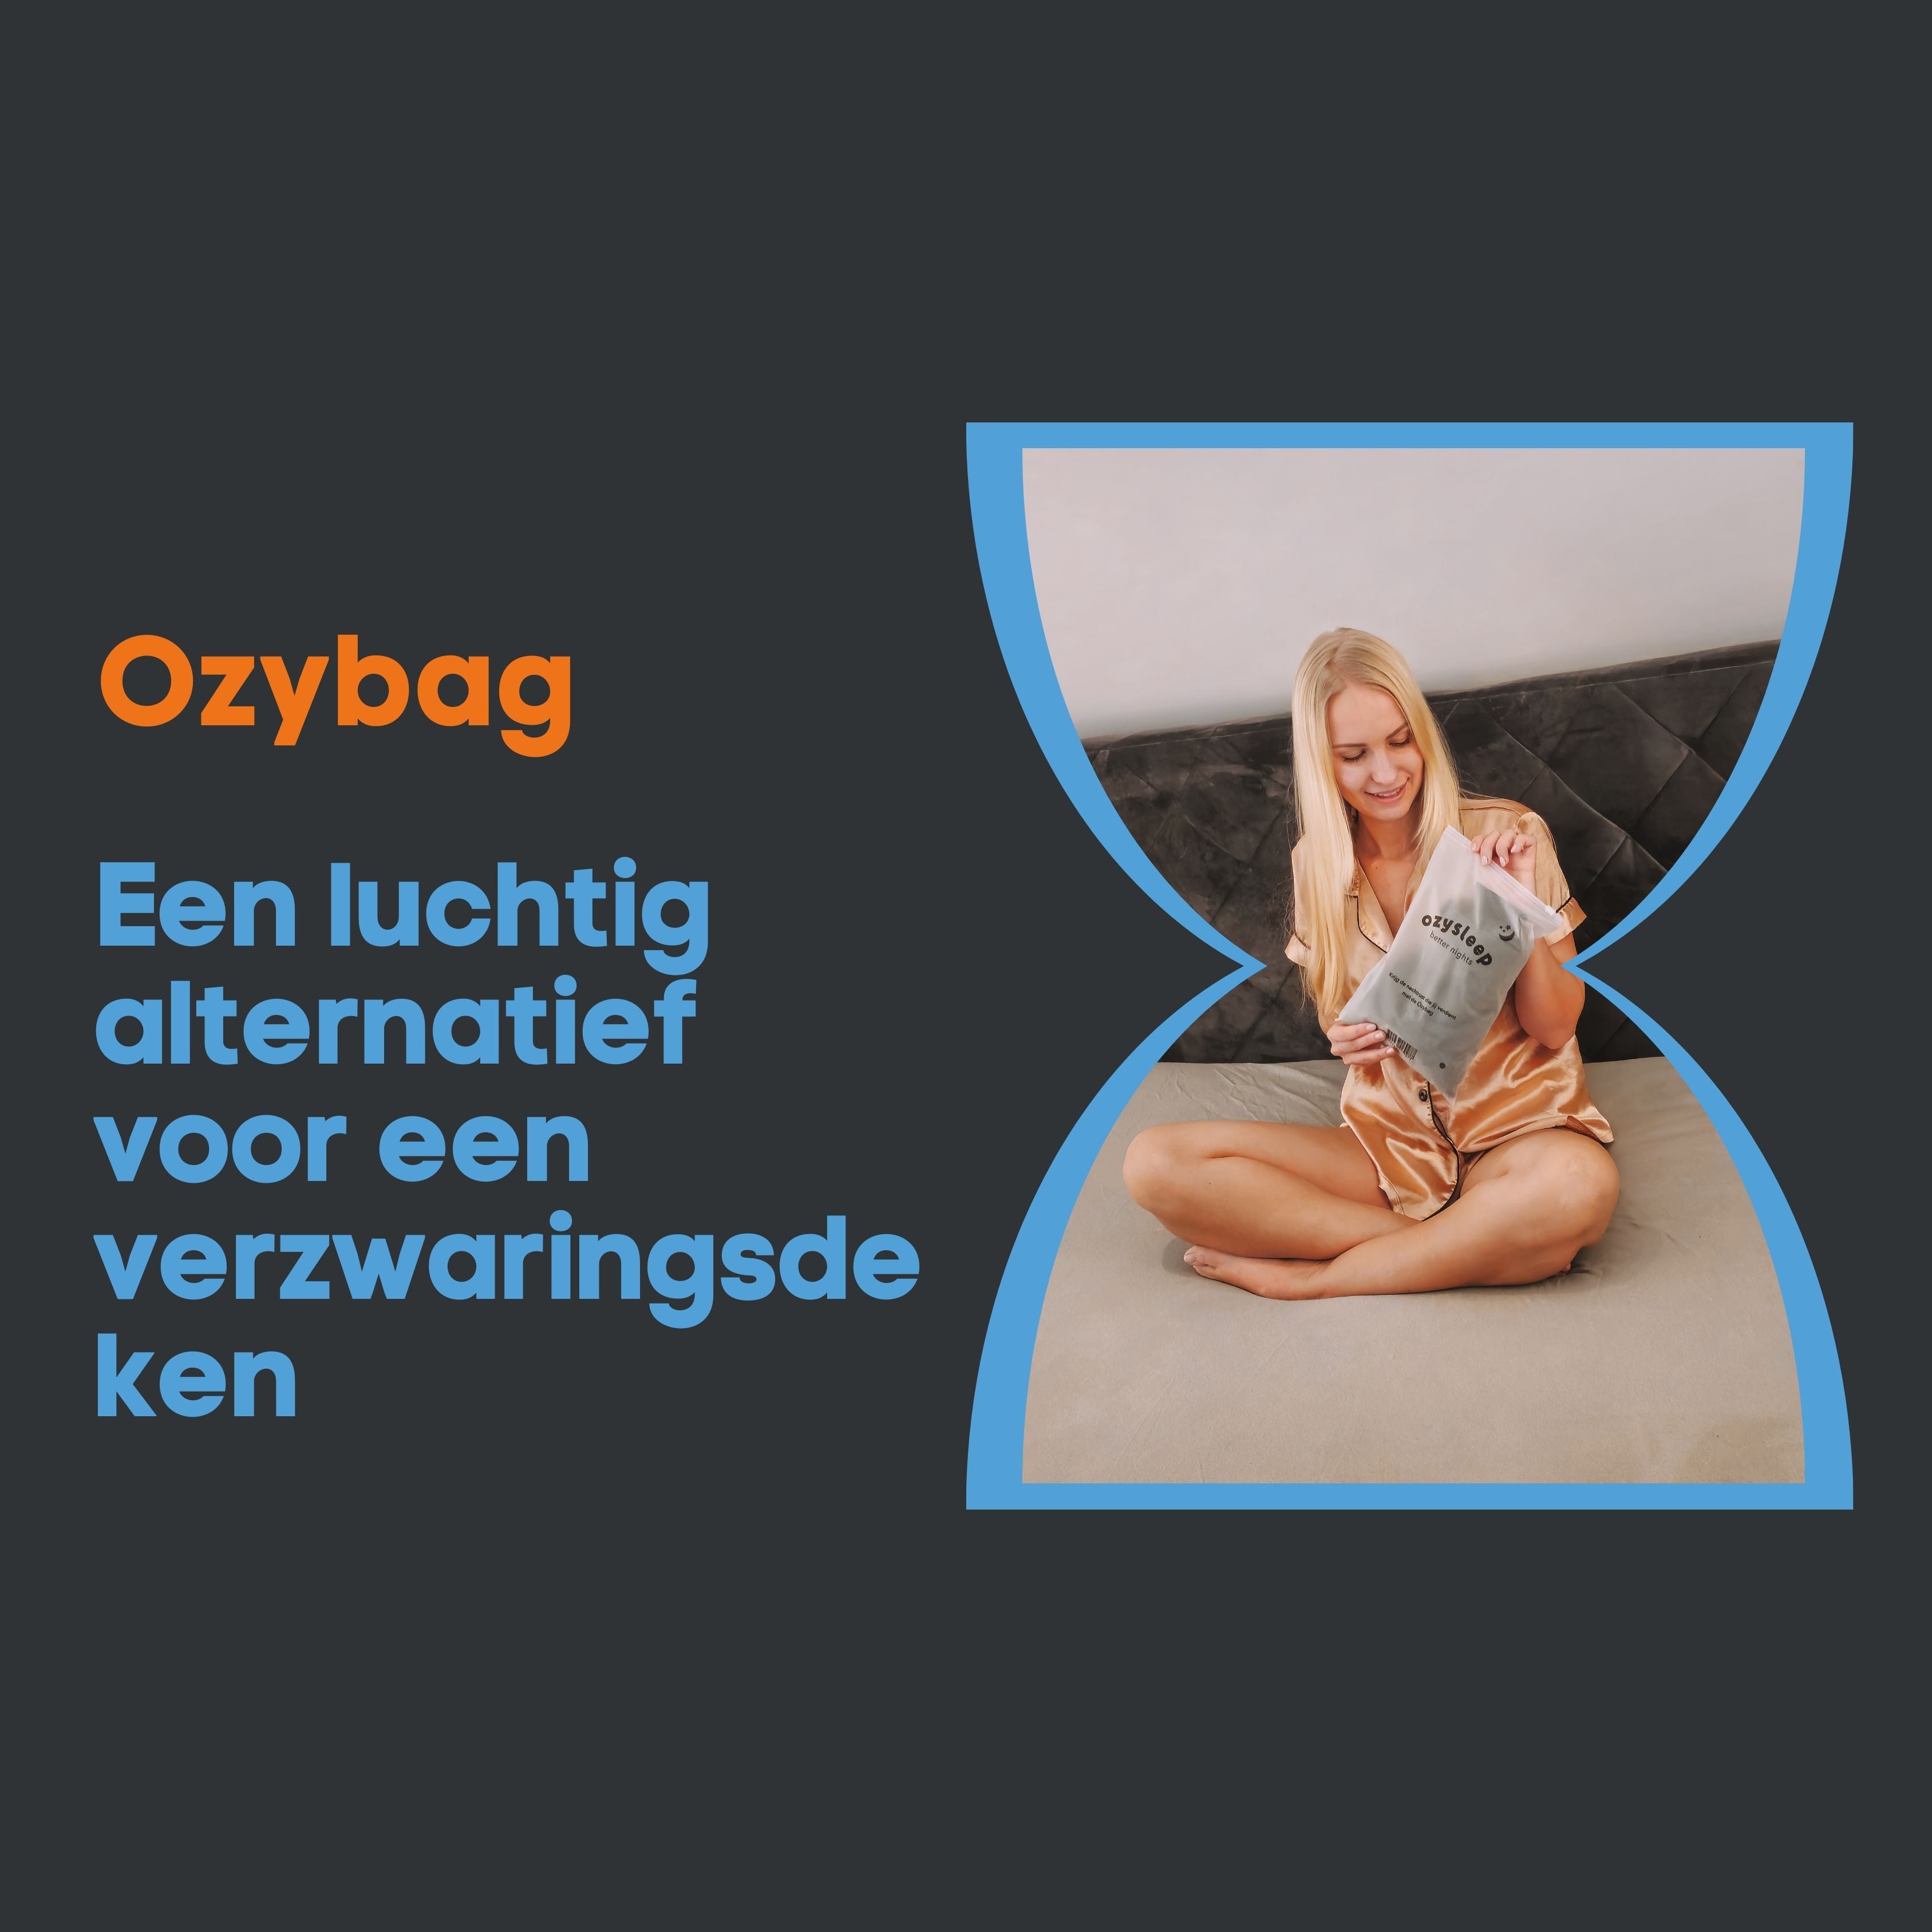 De Ozybag: een luchtig alternatief voor een verzwaringsdeken